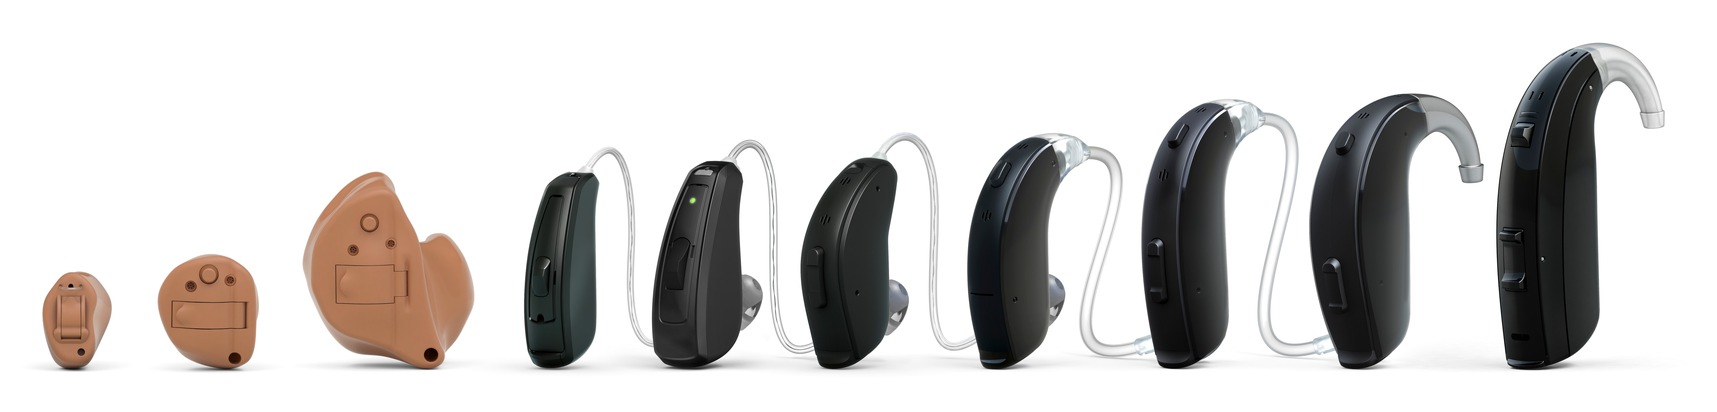 ReSound Key-Date präsentiert smartes Premium-Hören für alle: Online-Konferenz am 1. März stellt neue Hörgerätefamilie ReSound Key vor